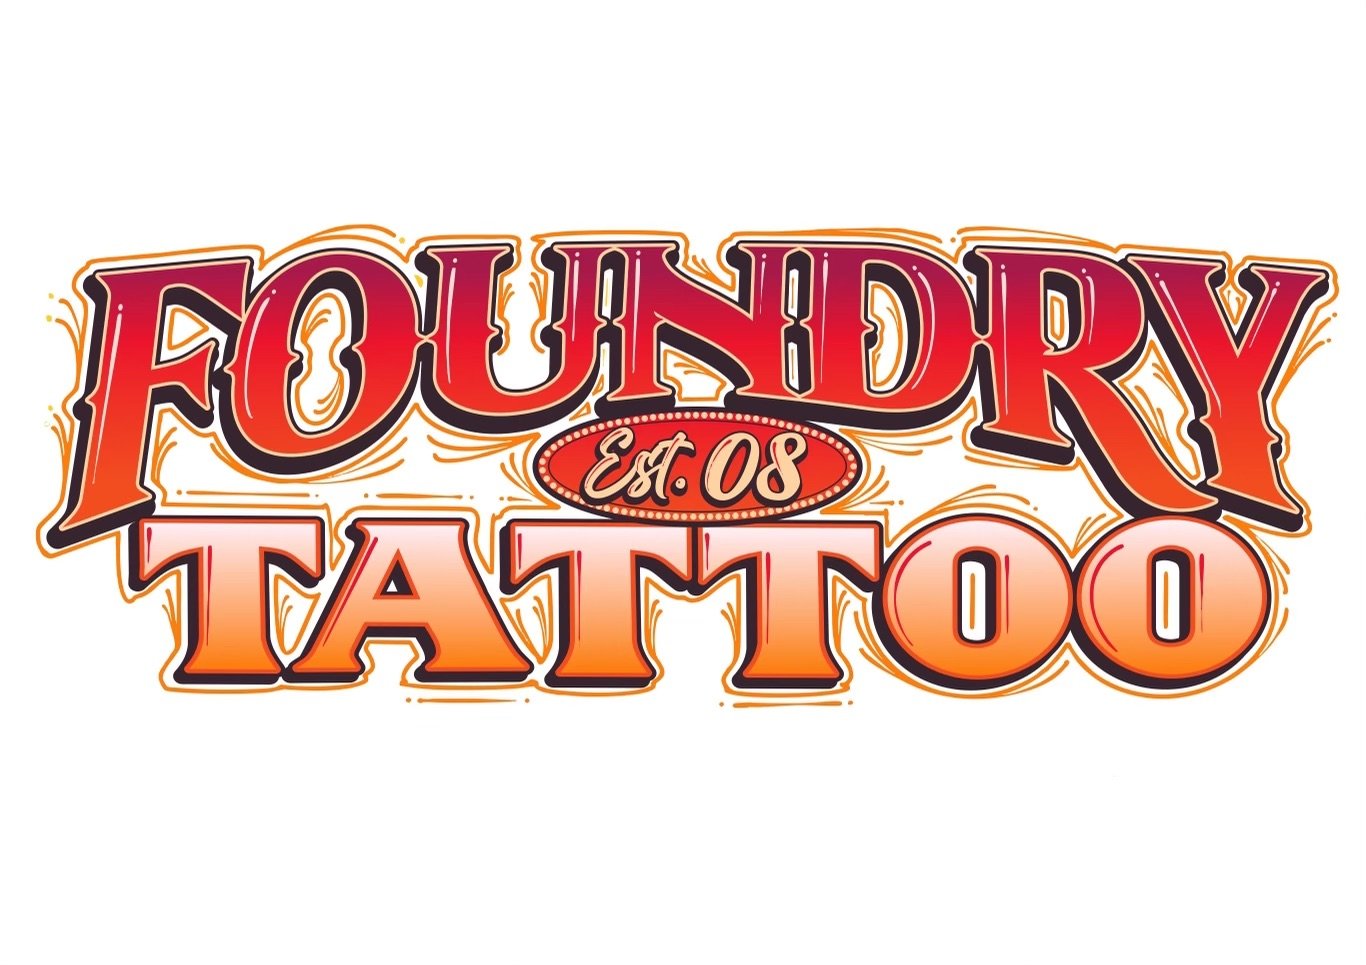 Foundry Tattoo